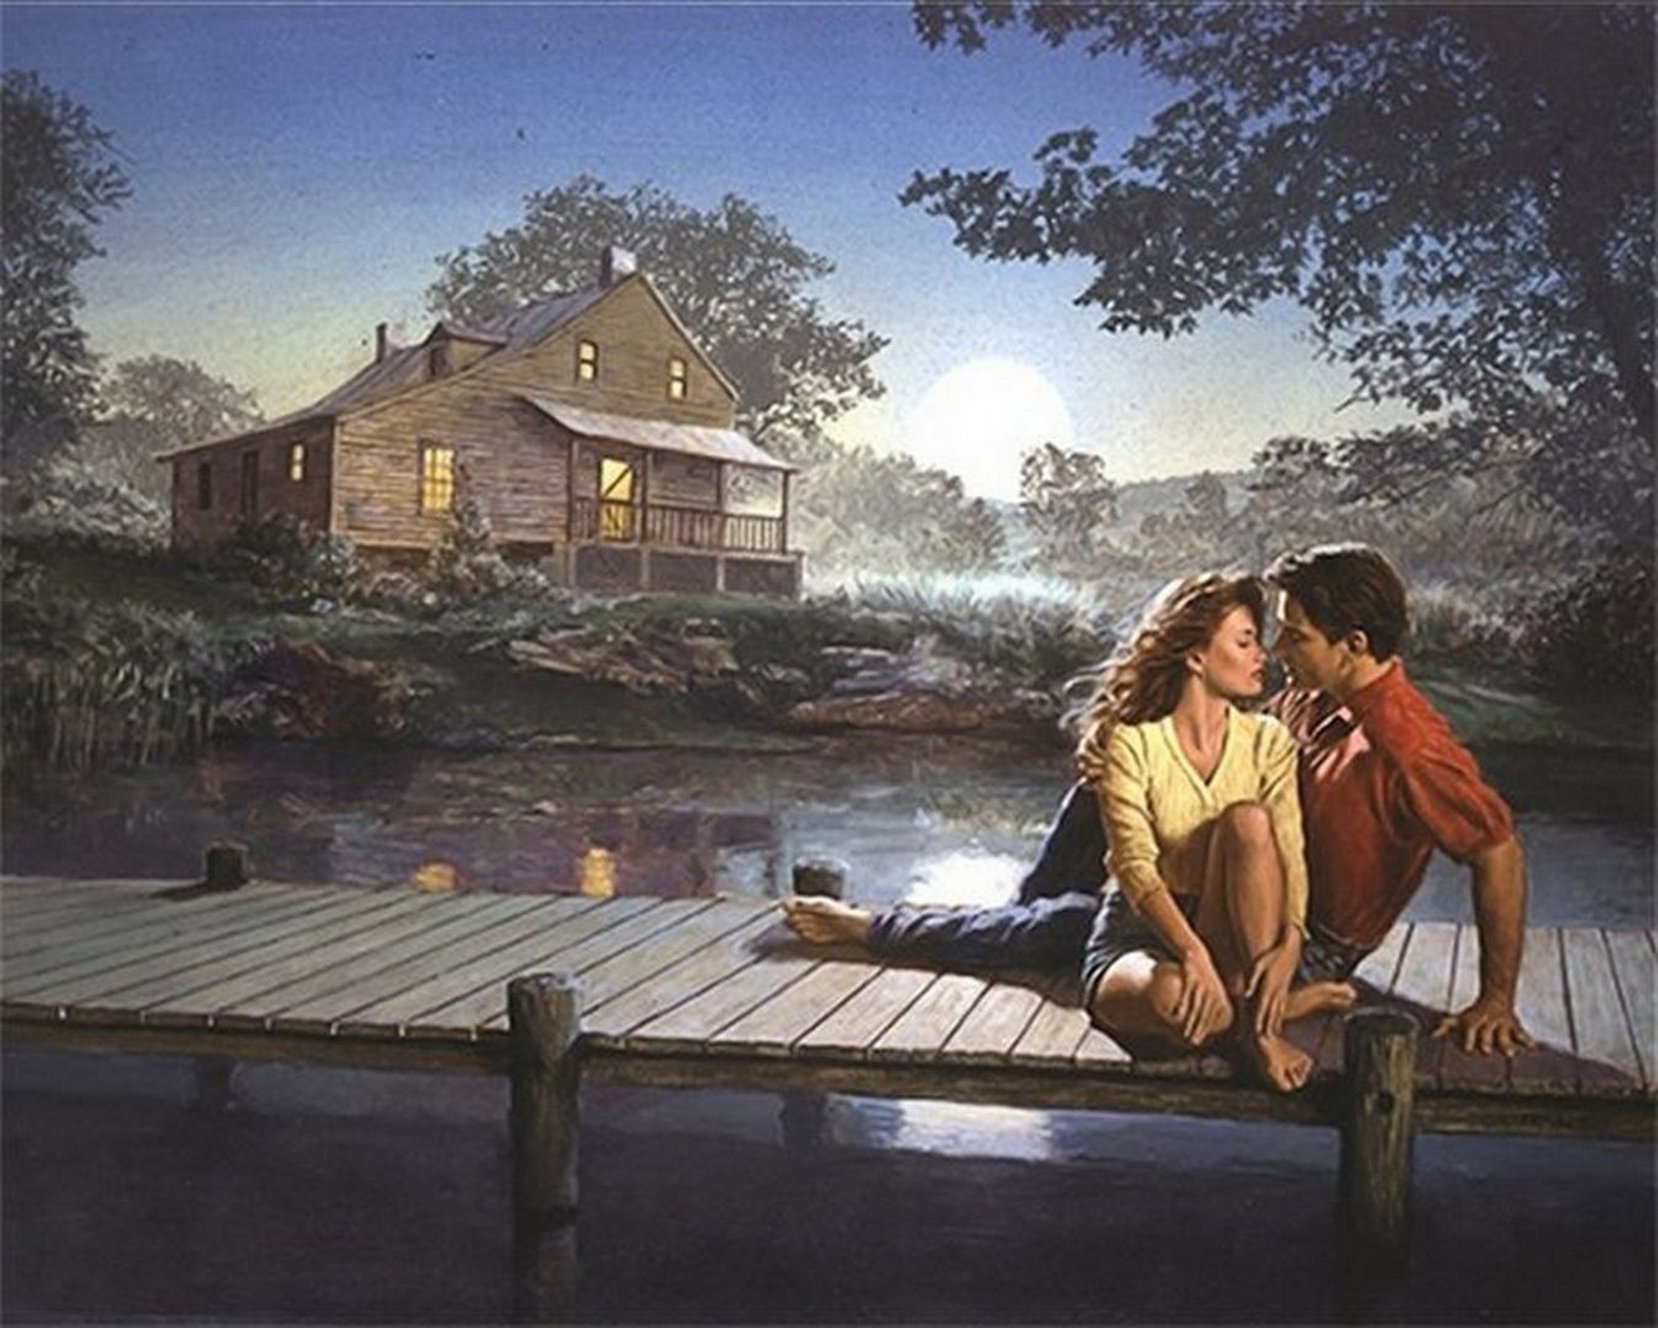 Тихо ласков теплый вечер. Двое у реки. Романтика в деревне. Крыльцо вечер. Влюбленные у реки.